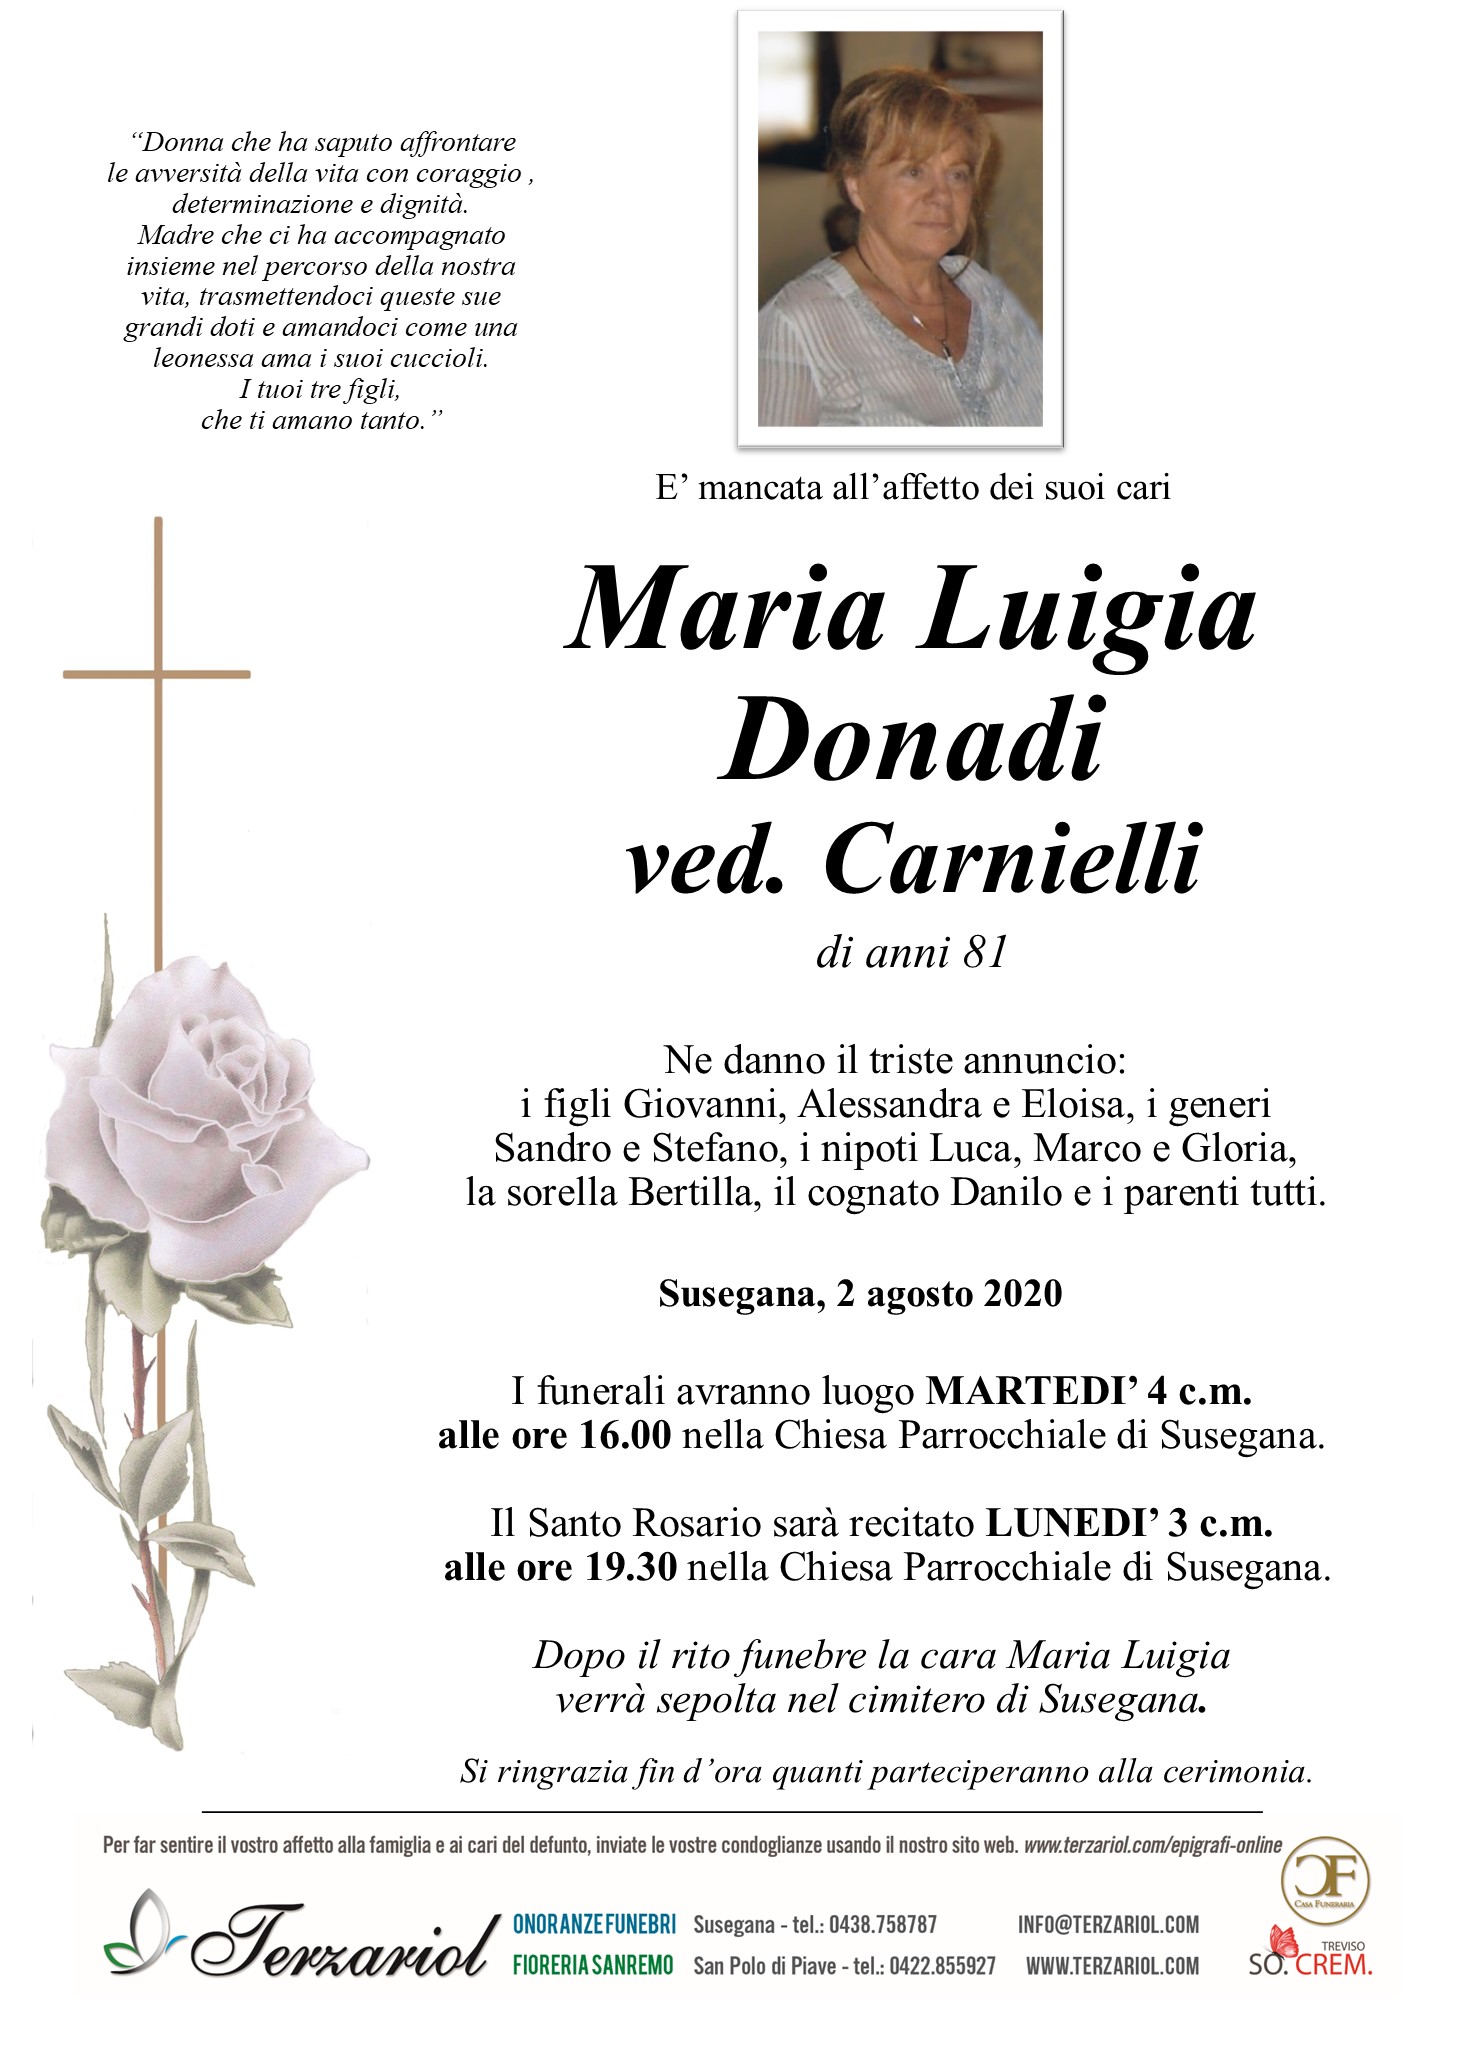 DONADI MARIA LUIGIA - terzariol.com